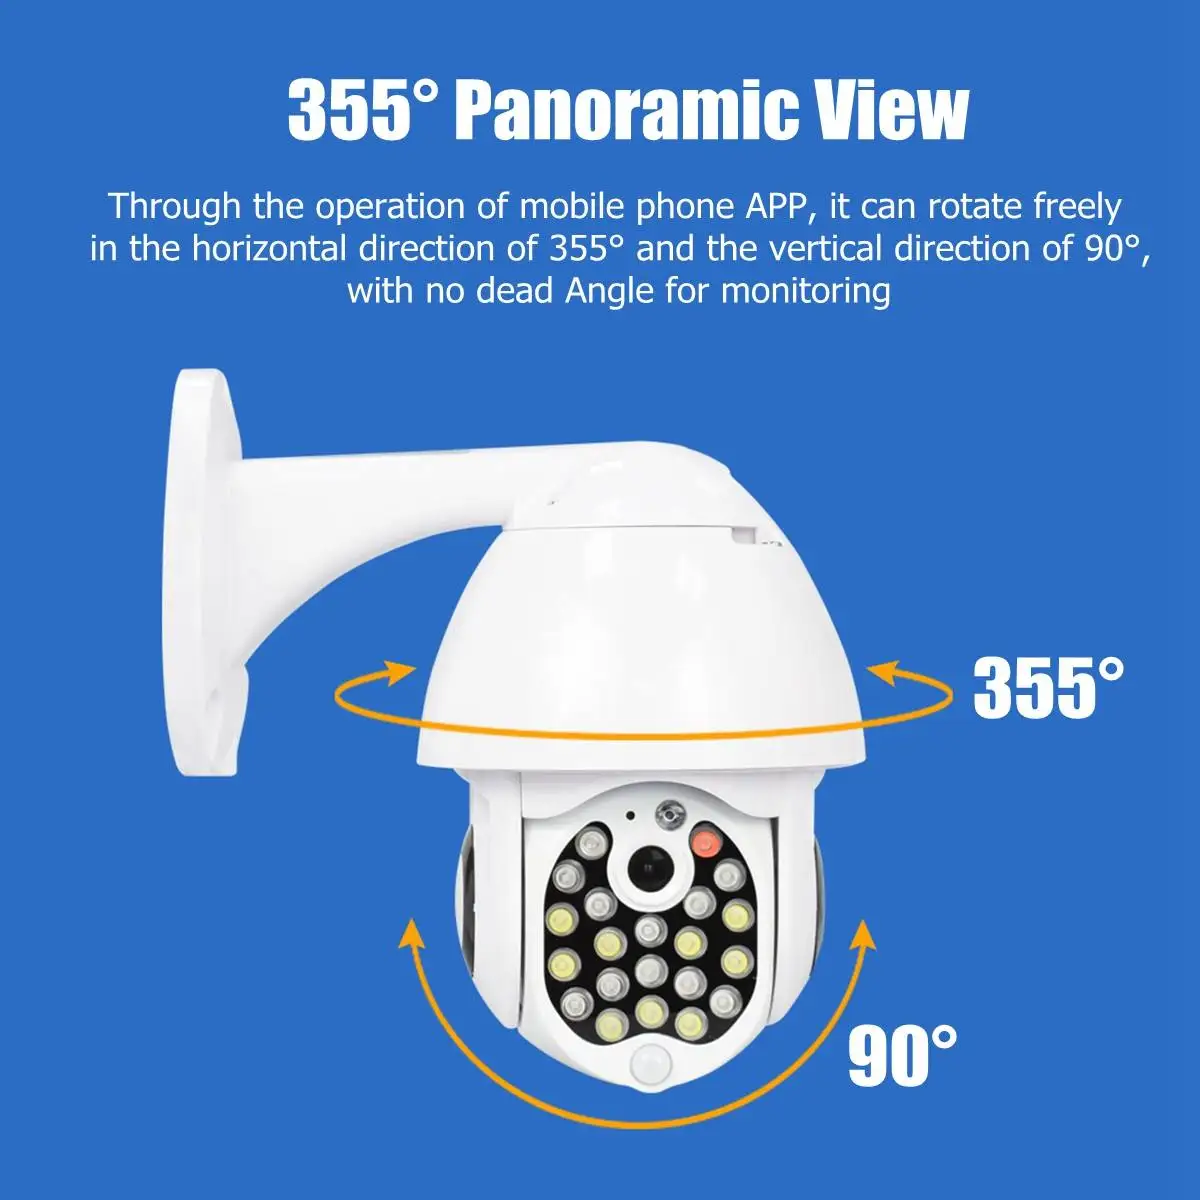 GUUDGO 21 светодиодный ip-камера с 8-кратным зумом, WiFi, купольная камера видеонаблюдения, полноцветная камера ночного видения, IP66, водонепроницаемый монитор панорамирования/наклона